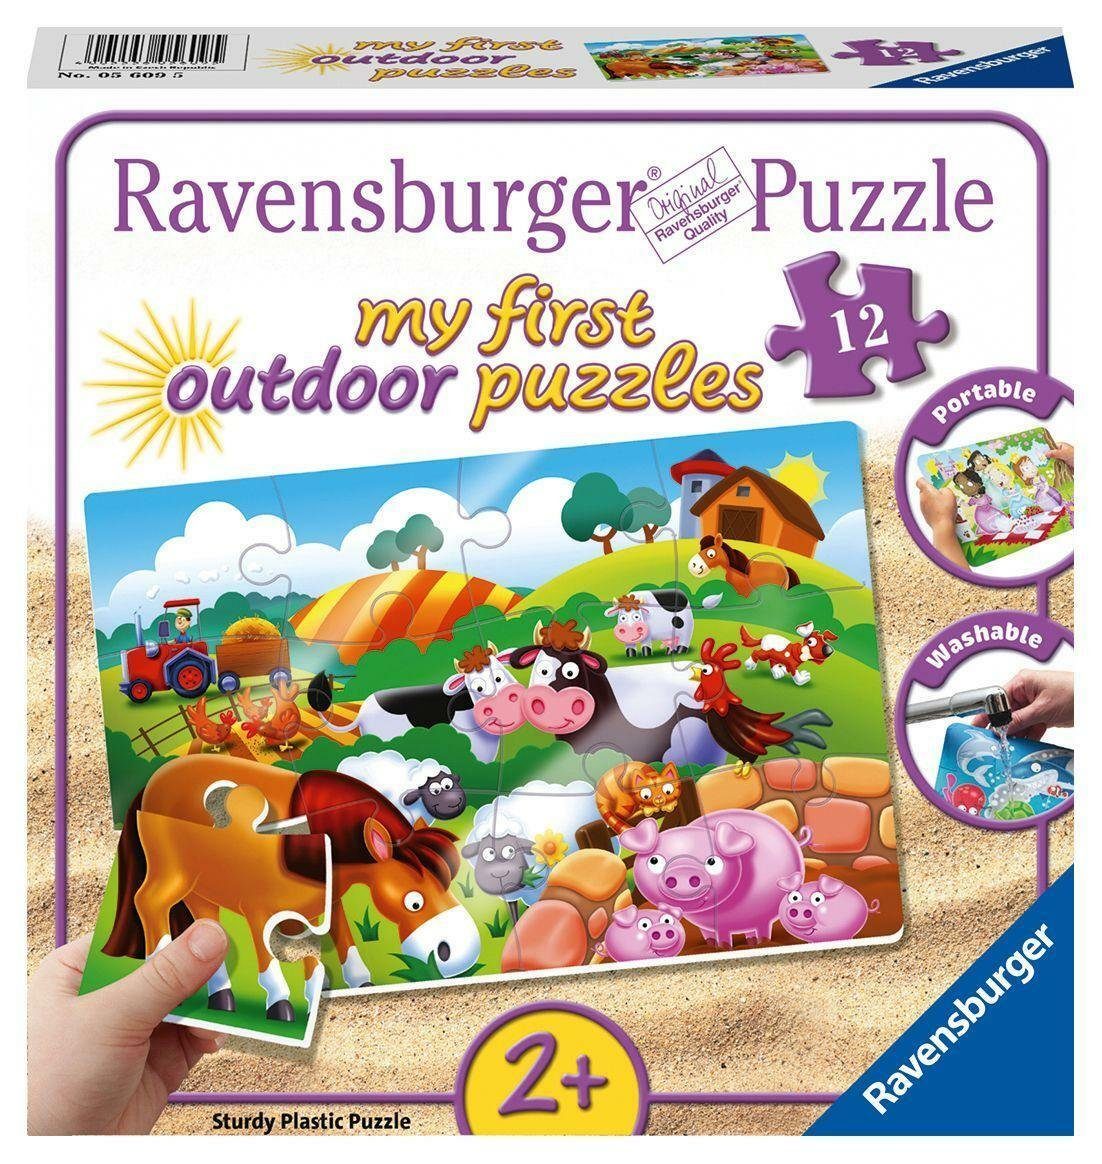 Puzzle Liebe Ravensburger 12 Puzzleteile Puzzle Teile, 12 Bauernhoftiere.